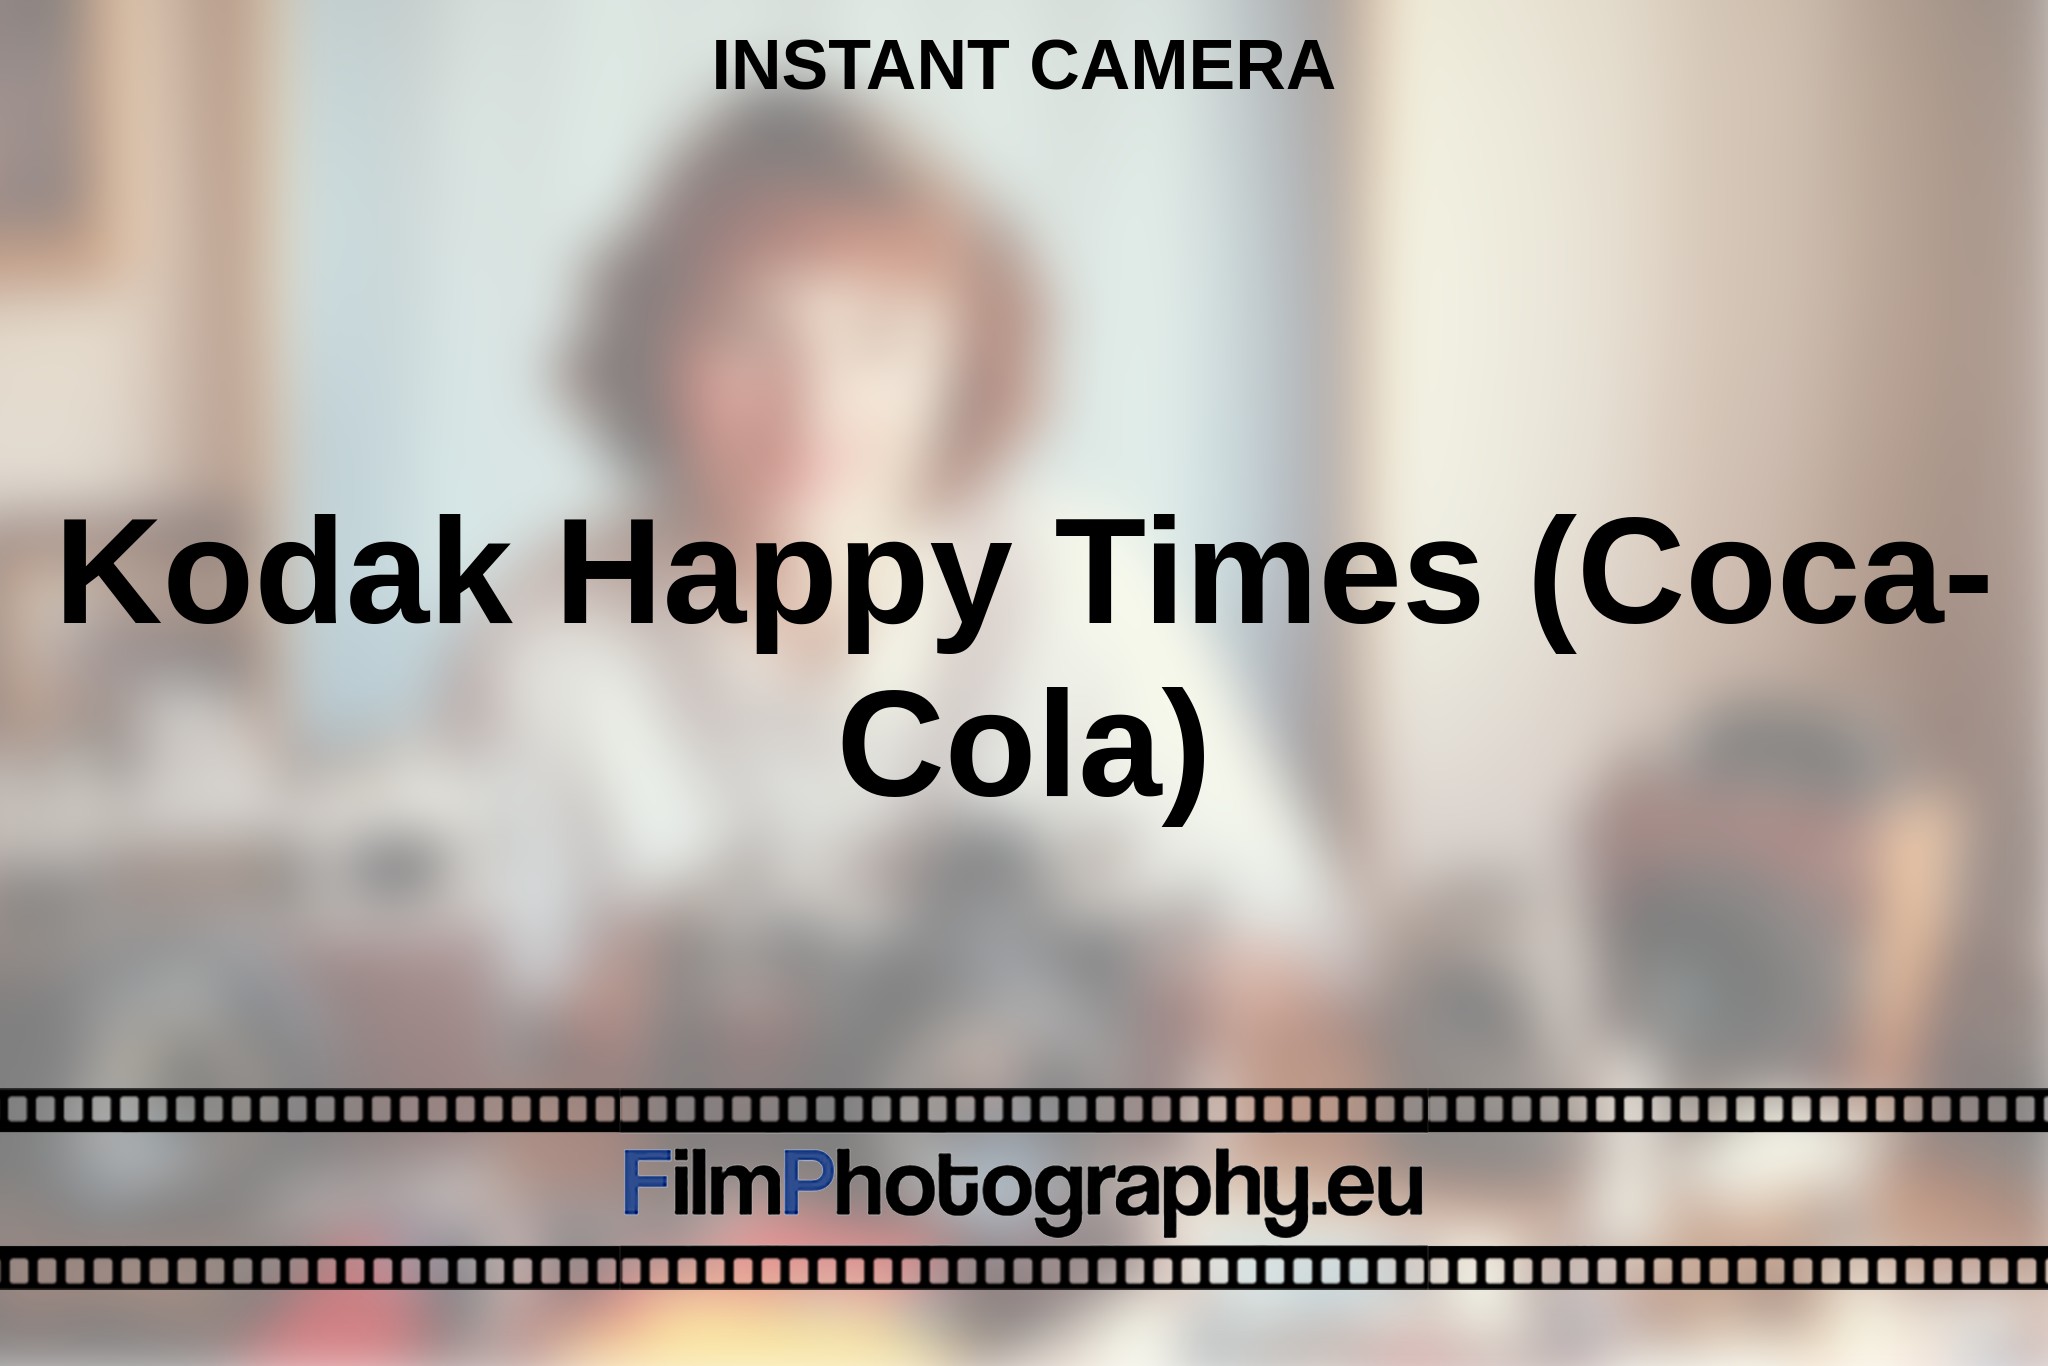 kodak-happy-times-coca-cola--instant-camera-en-bnv.jpg